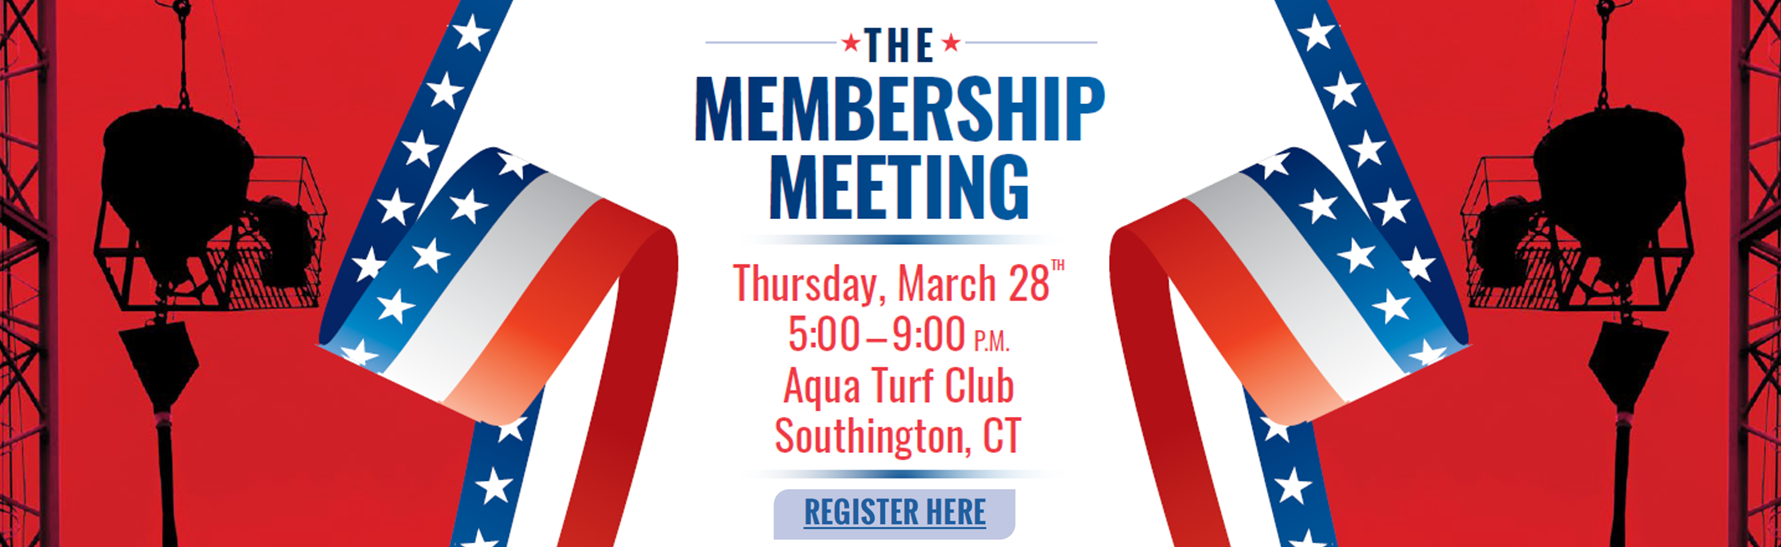 The Membership Meeting Banner638439715097817011